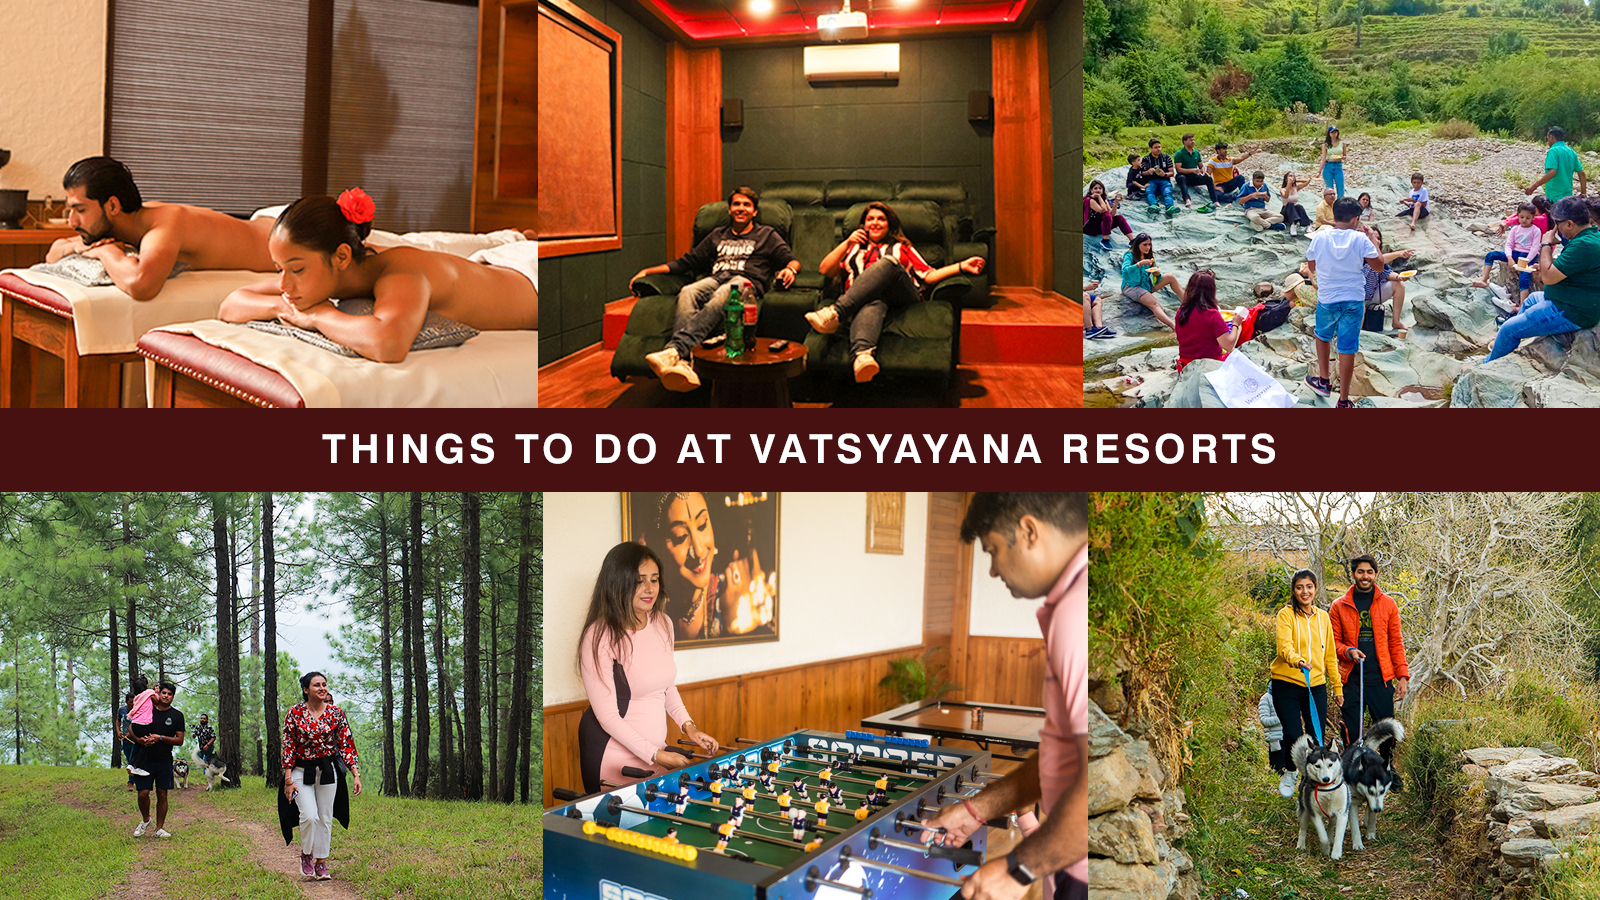 Things to do at Vatsyayana